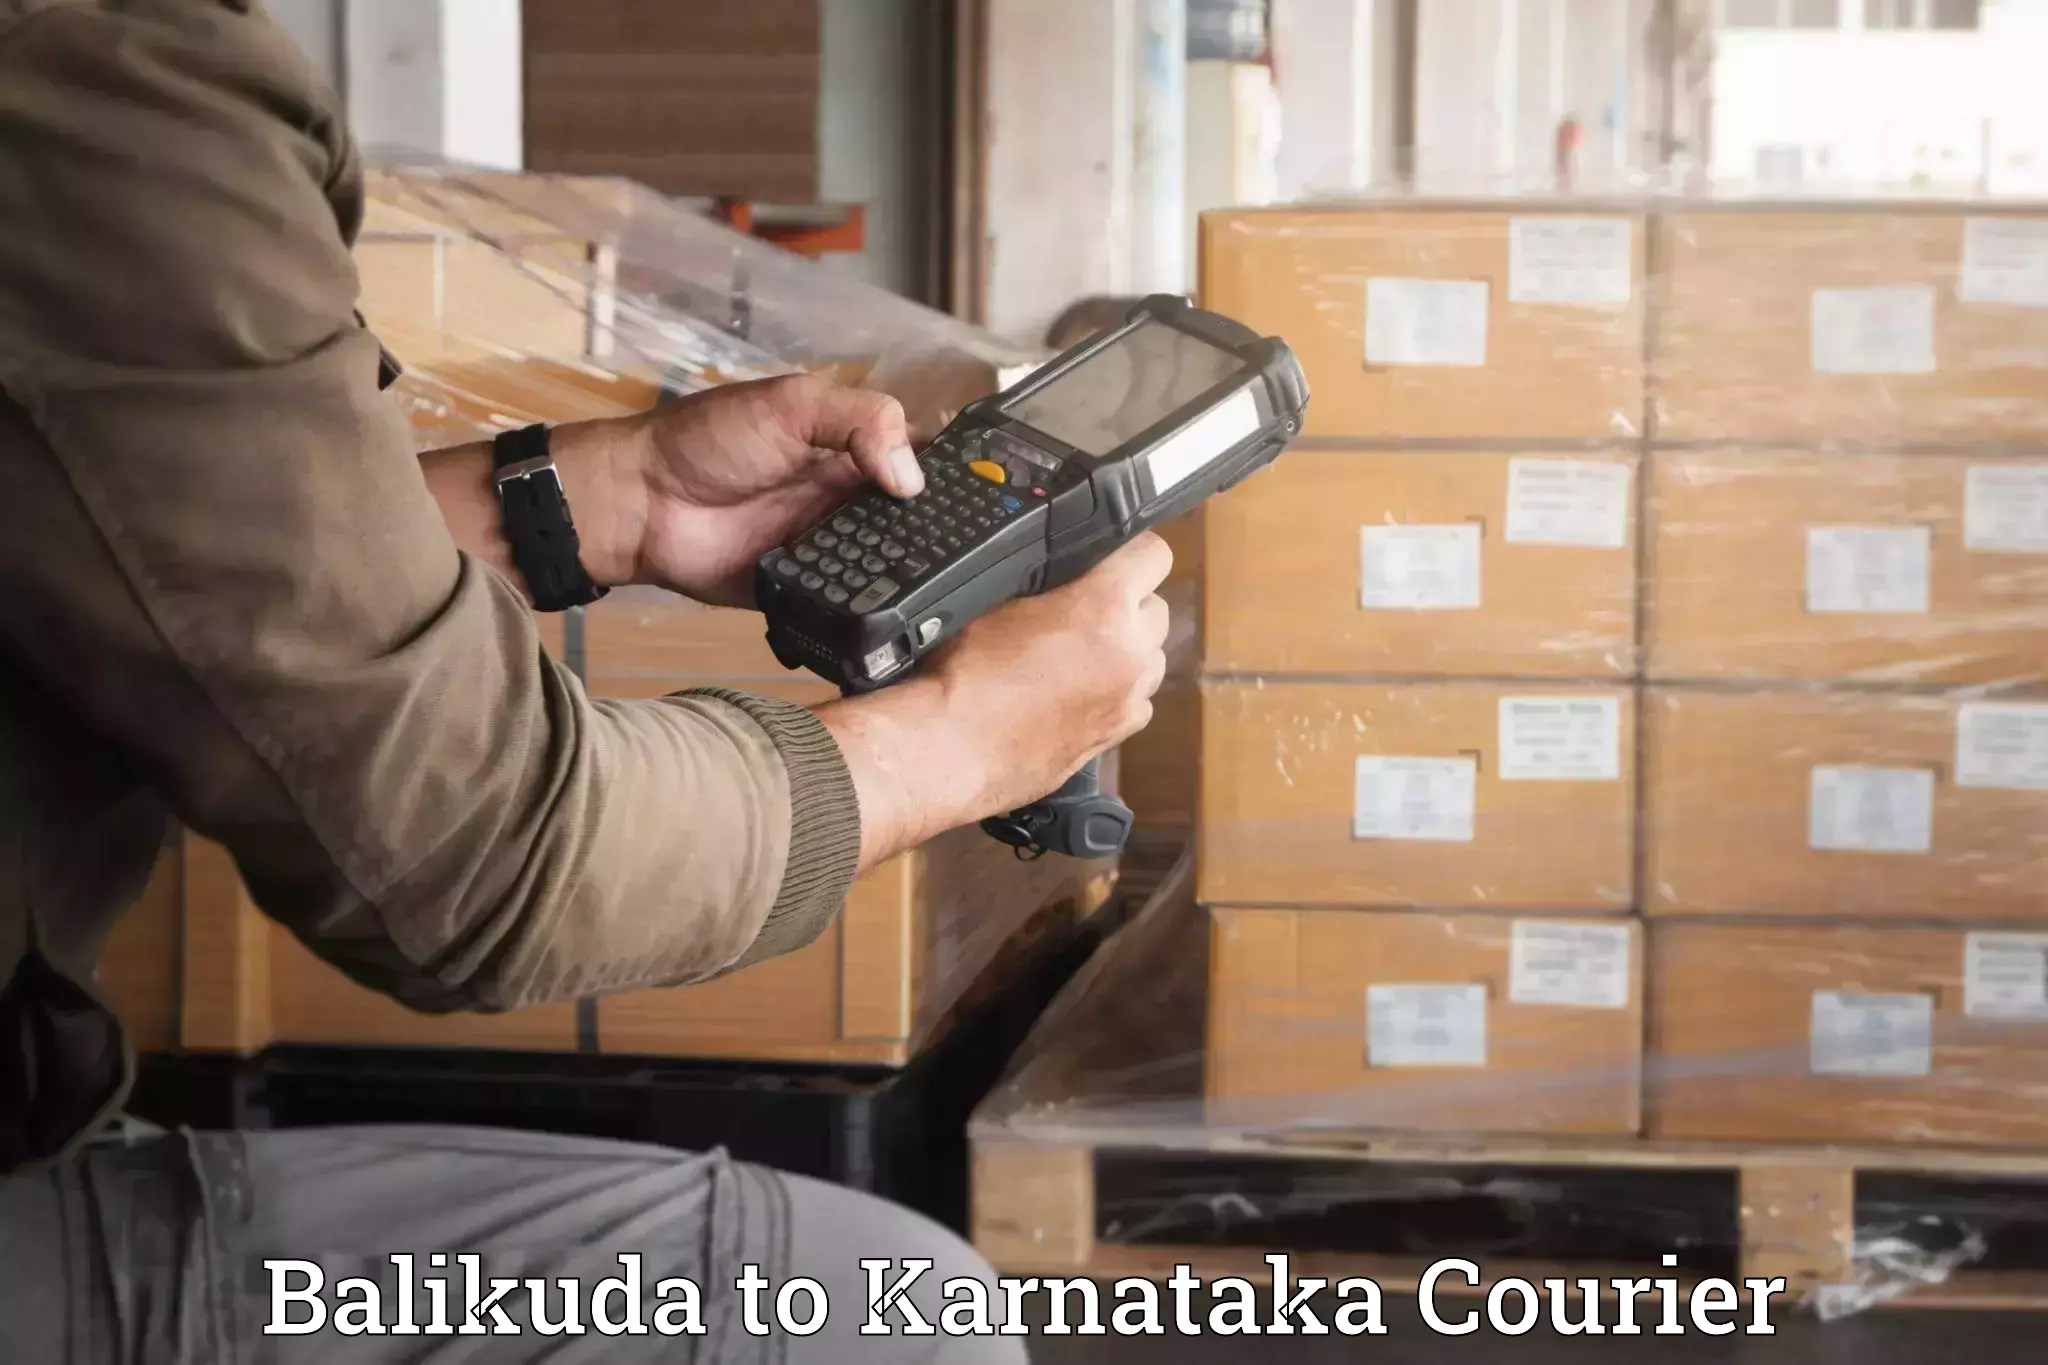 Efficient packing services Balikuda to Kalaghatgi